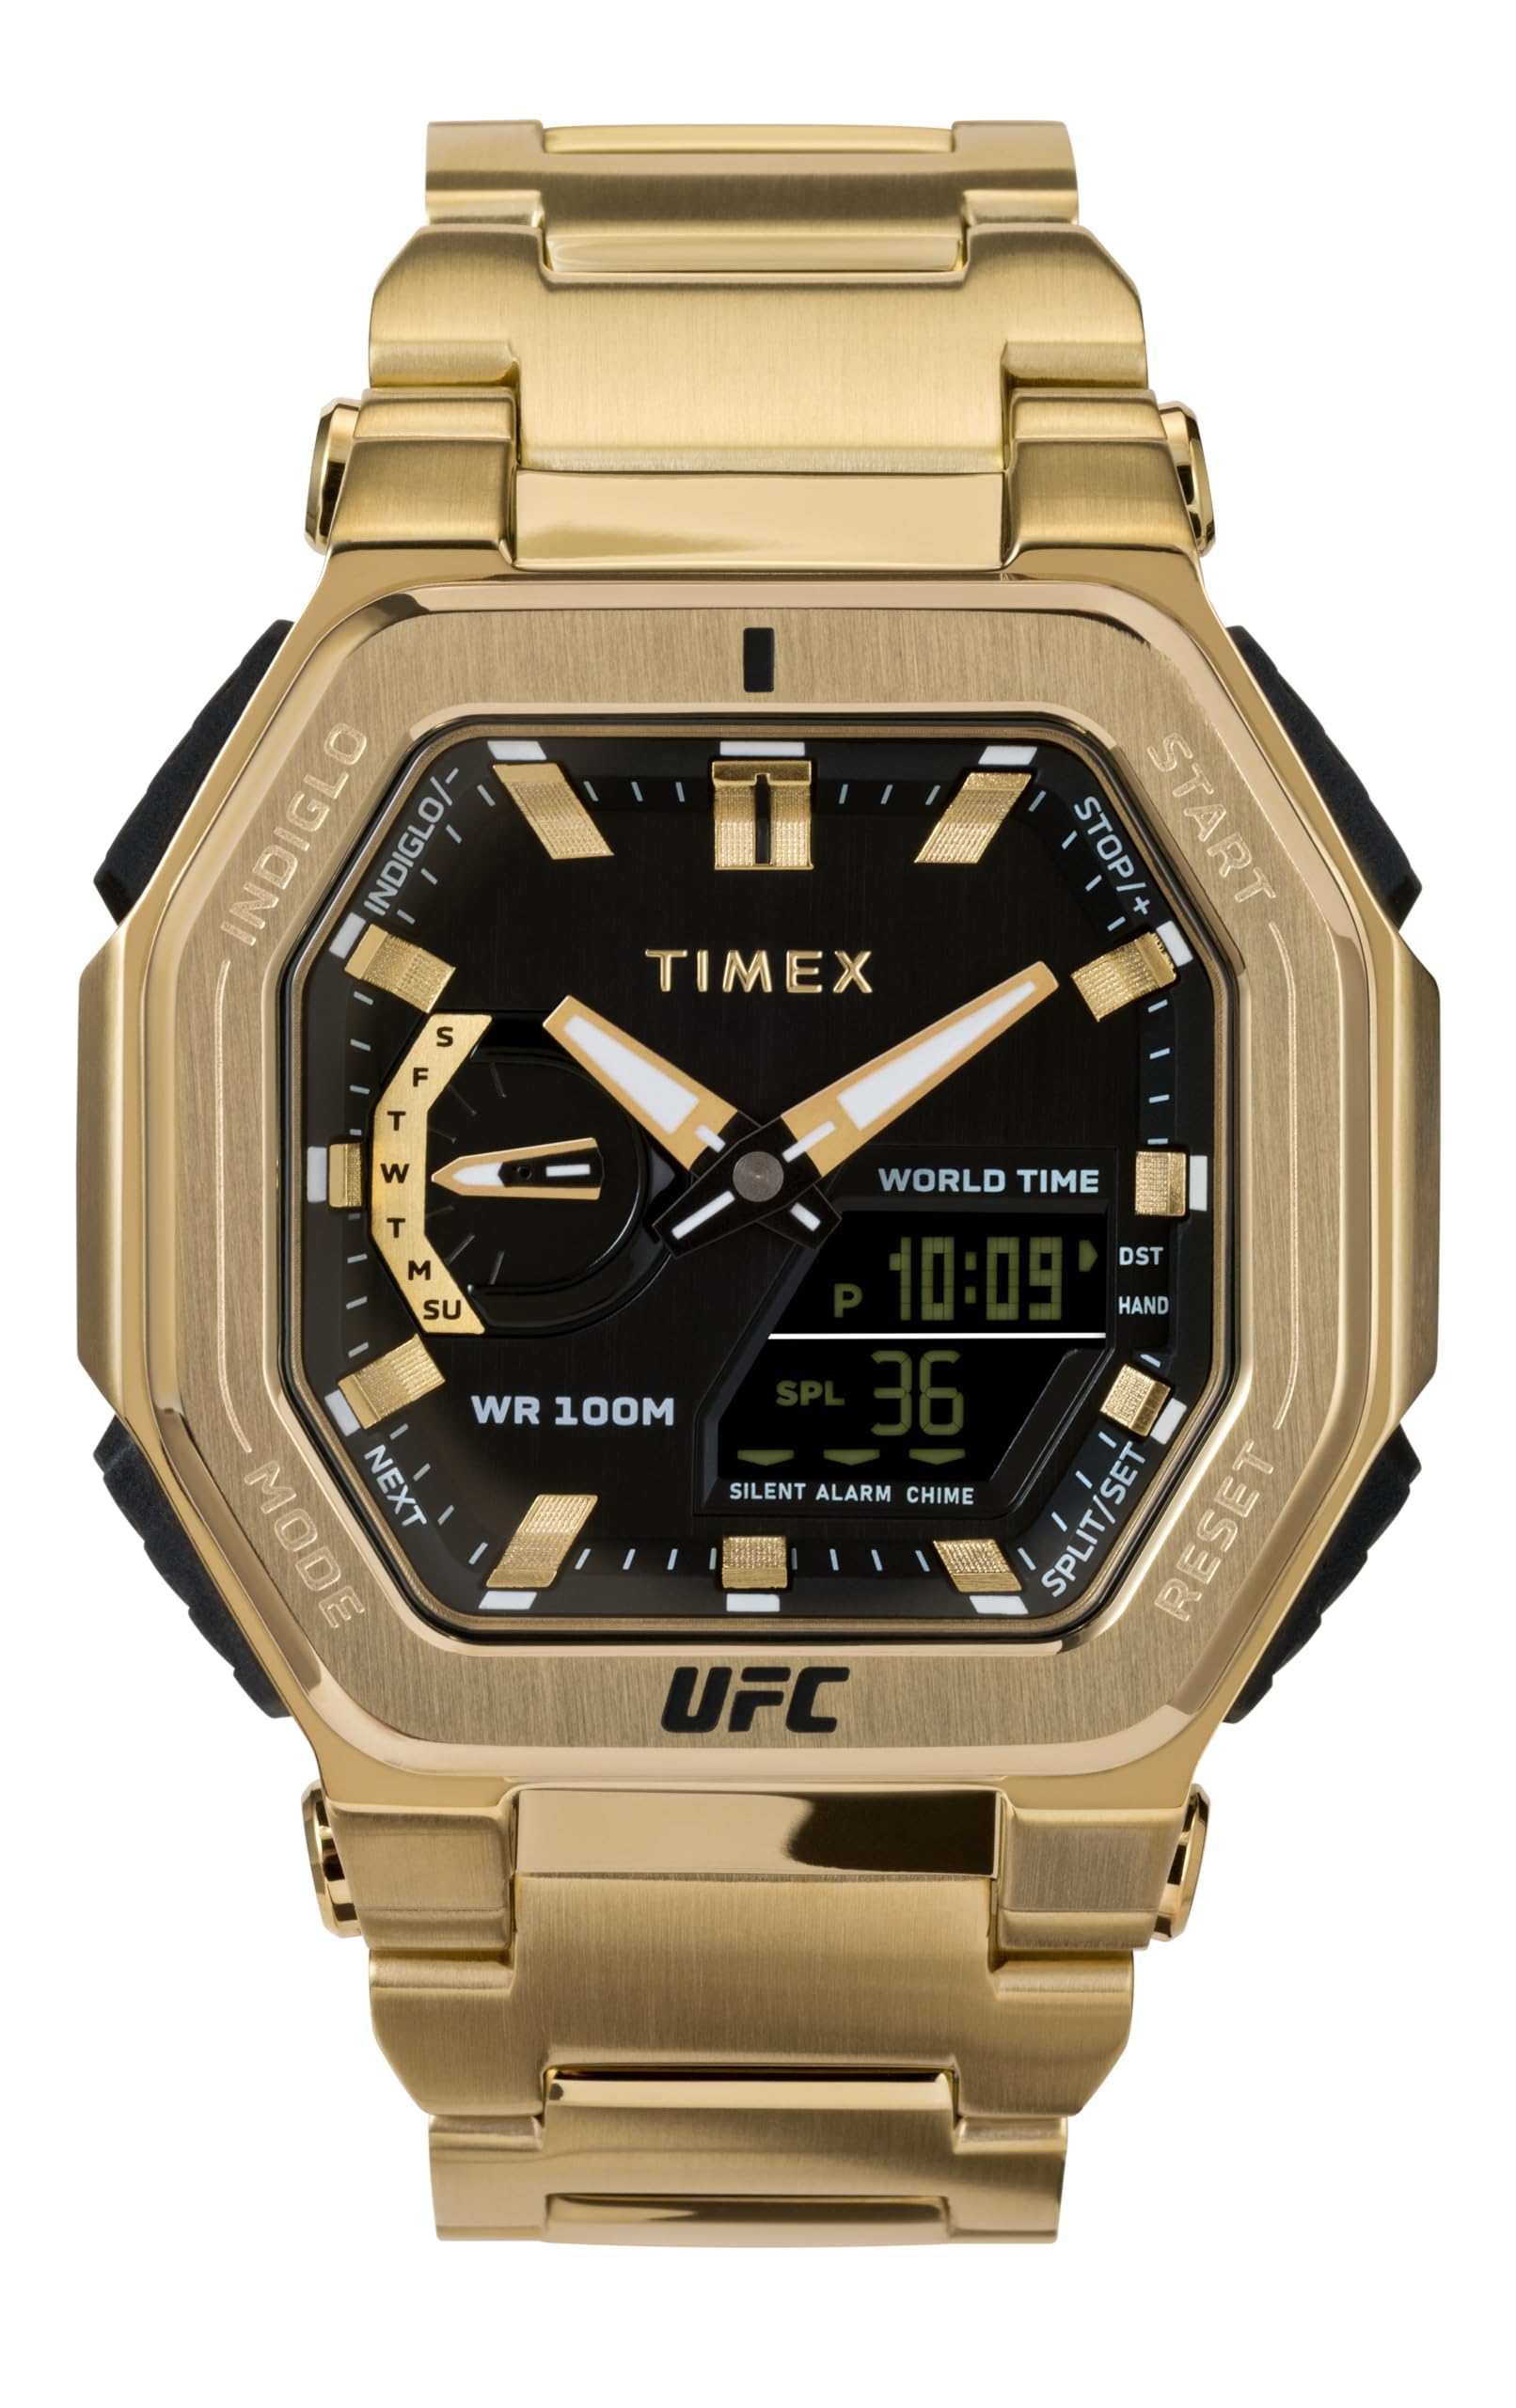 TmexタイメックスUFCメンズ男性コロッサス45ミリメートル腕時計 - ゴールドトーンブレスレットブラックダイヤルゴールドトーンケース